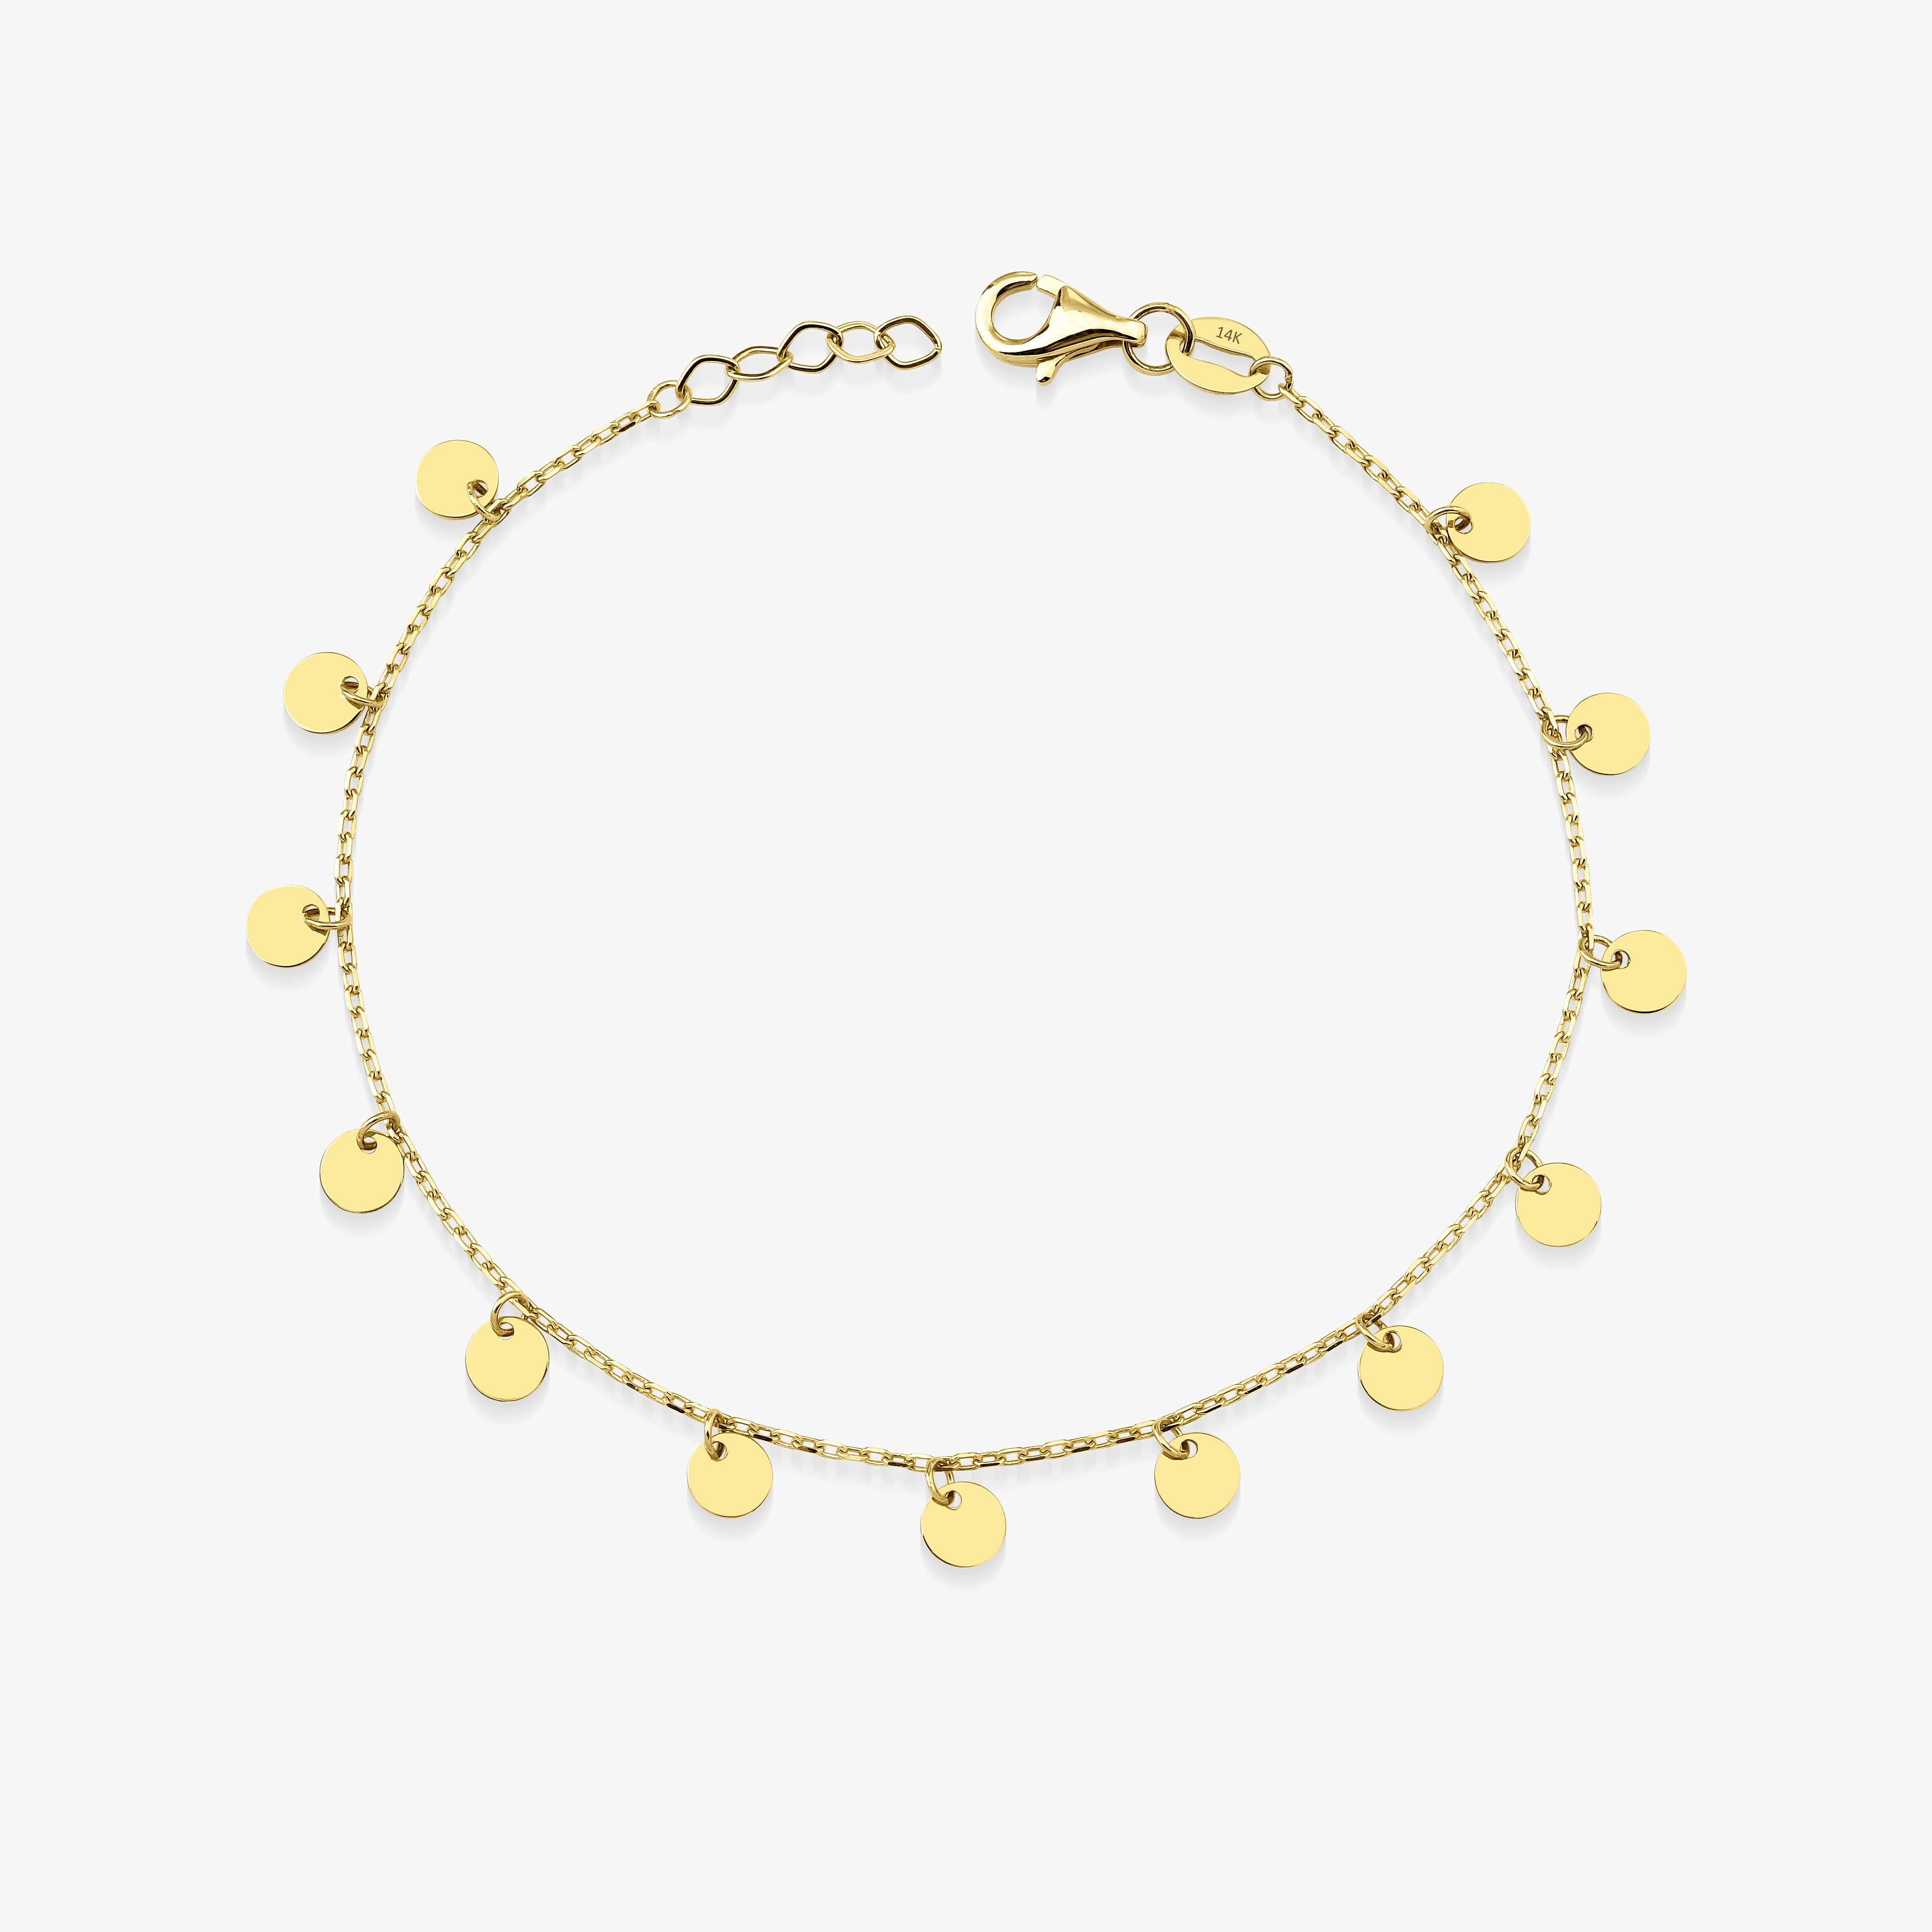 Circle Charm Bracelet in 14K Gold